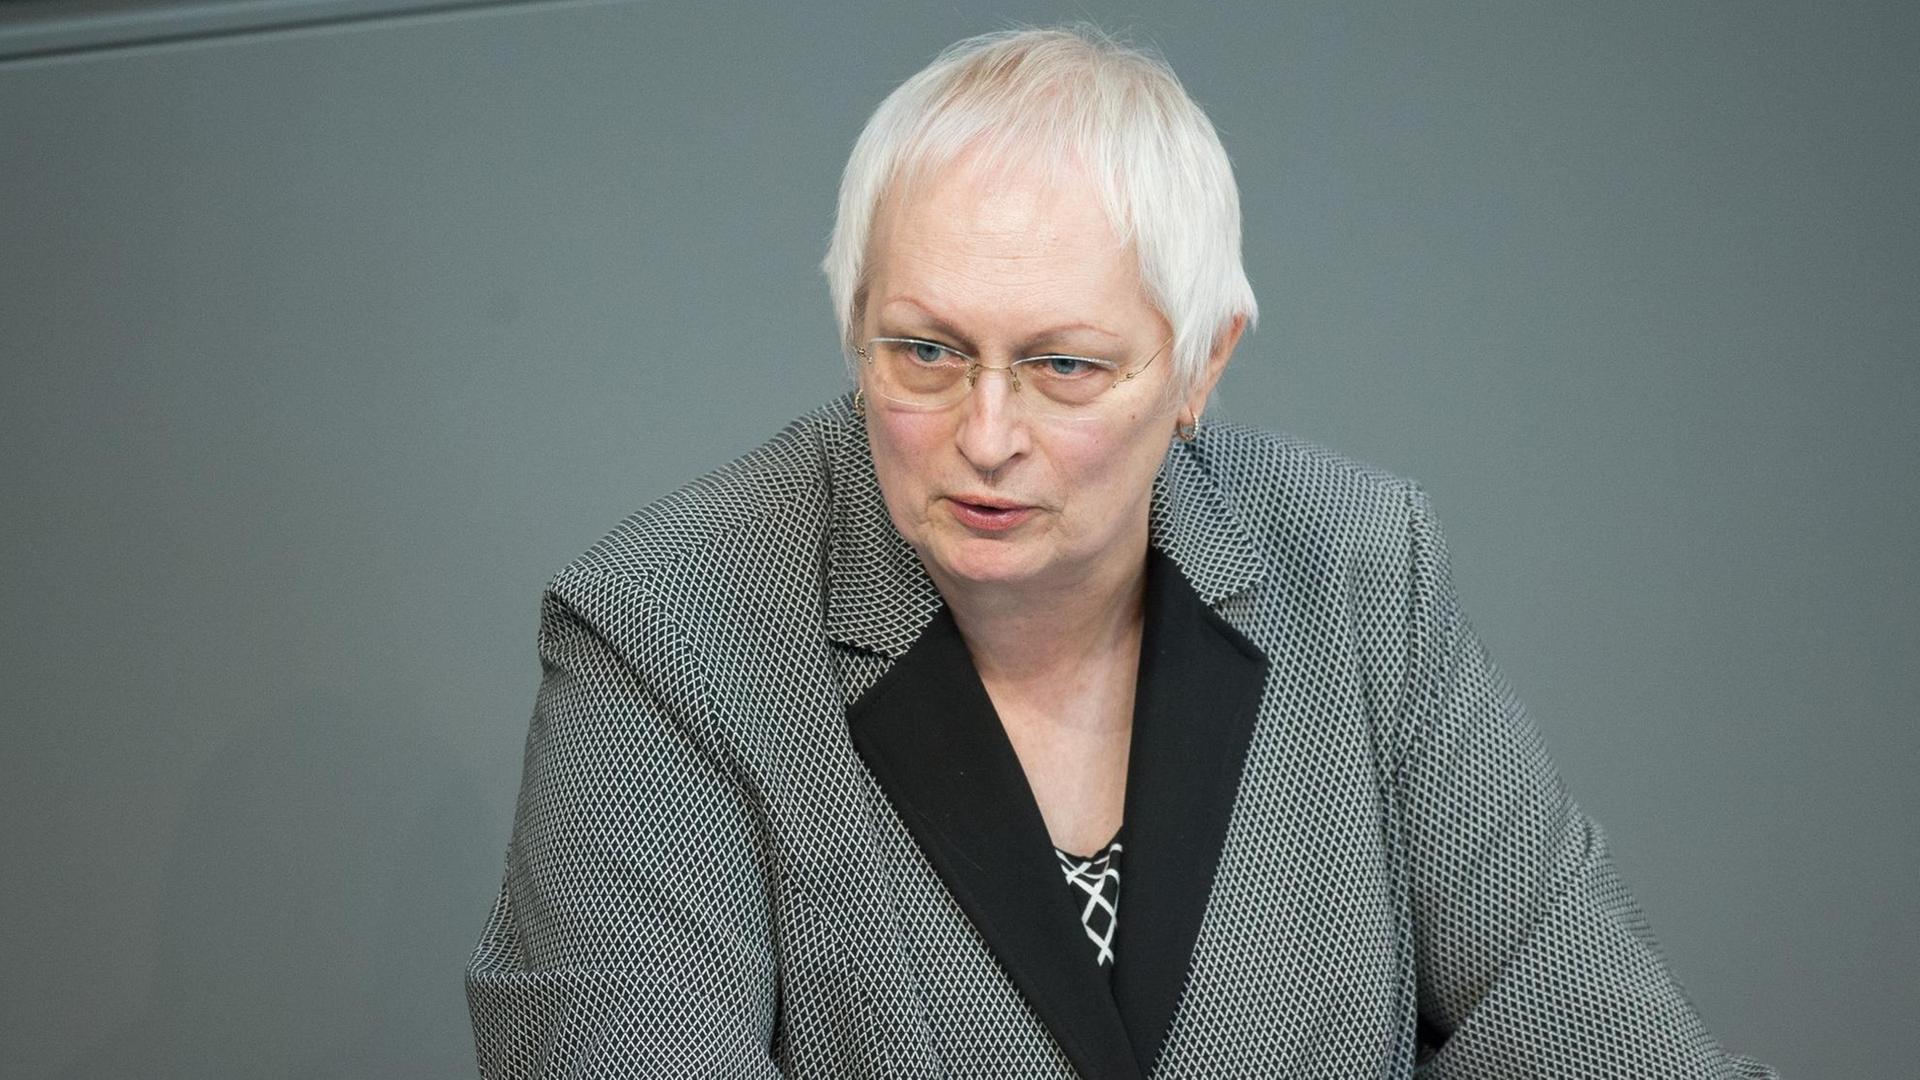 Valerie Wilms (Bündnis 90/Die Grünen) spricht am 27.03.2015 während einer Bundestagssitzung im Reichstag in Berlin